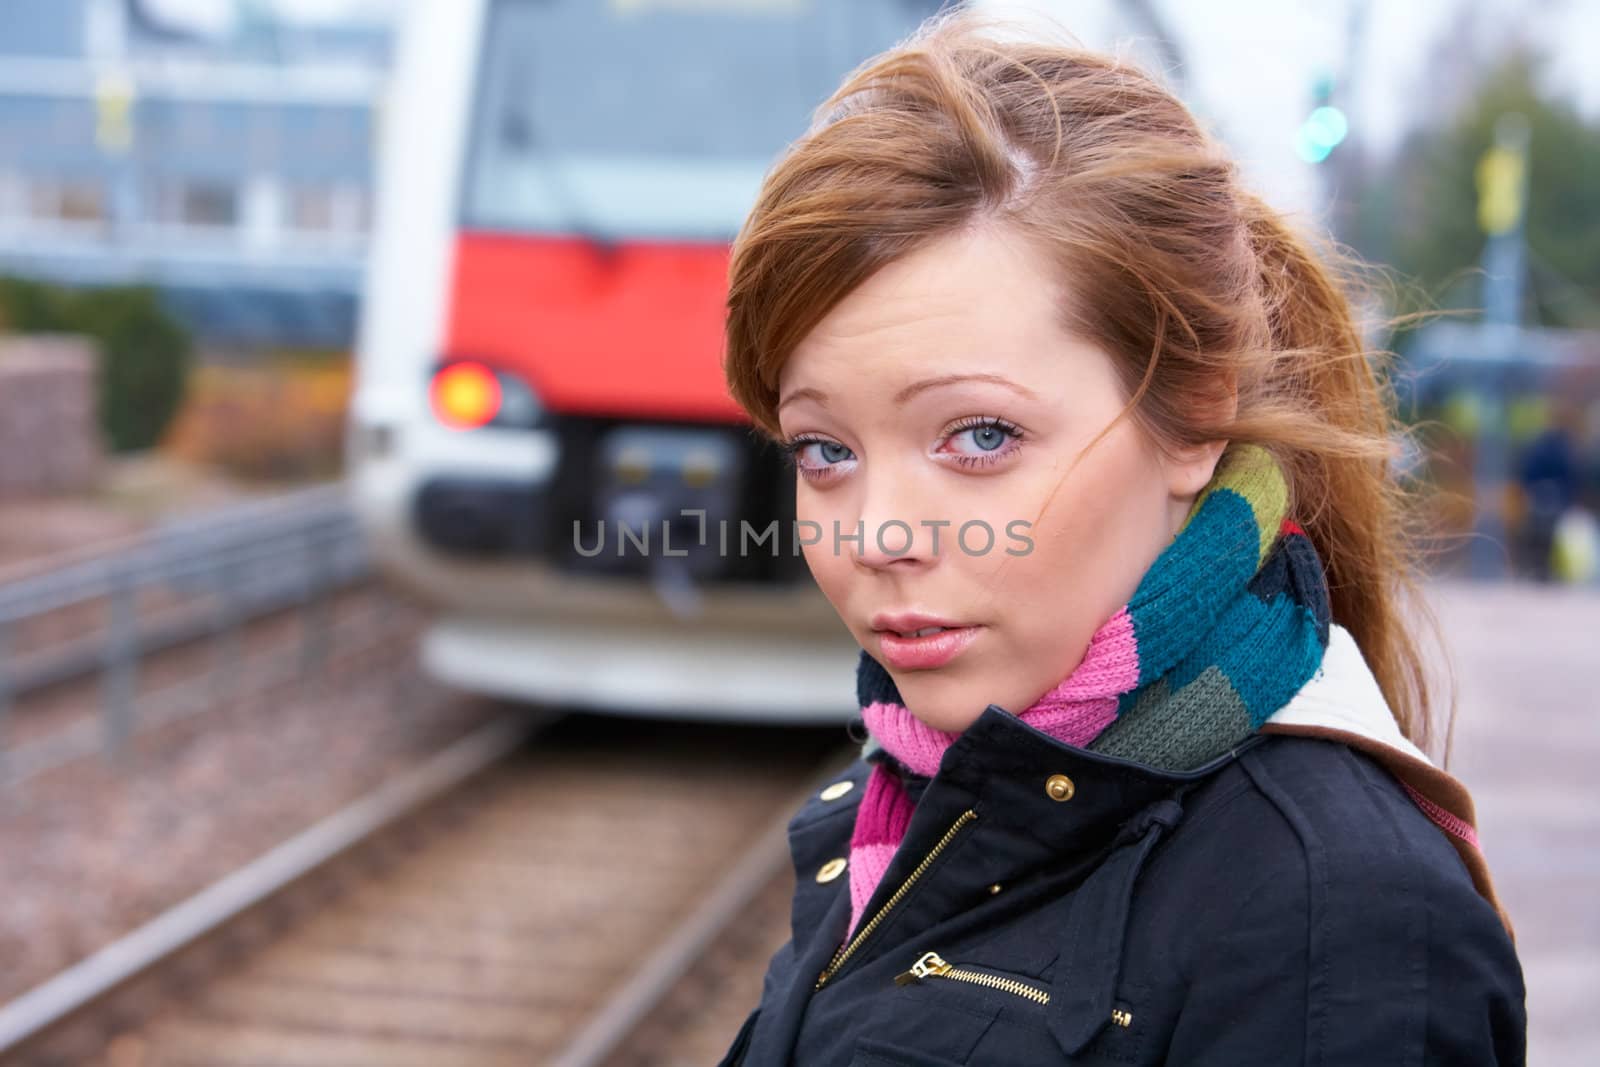 Teenage girl at railway platform, looking at camera